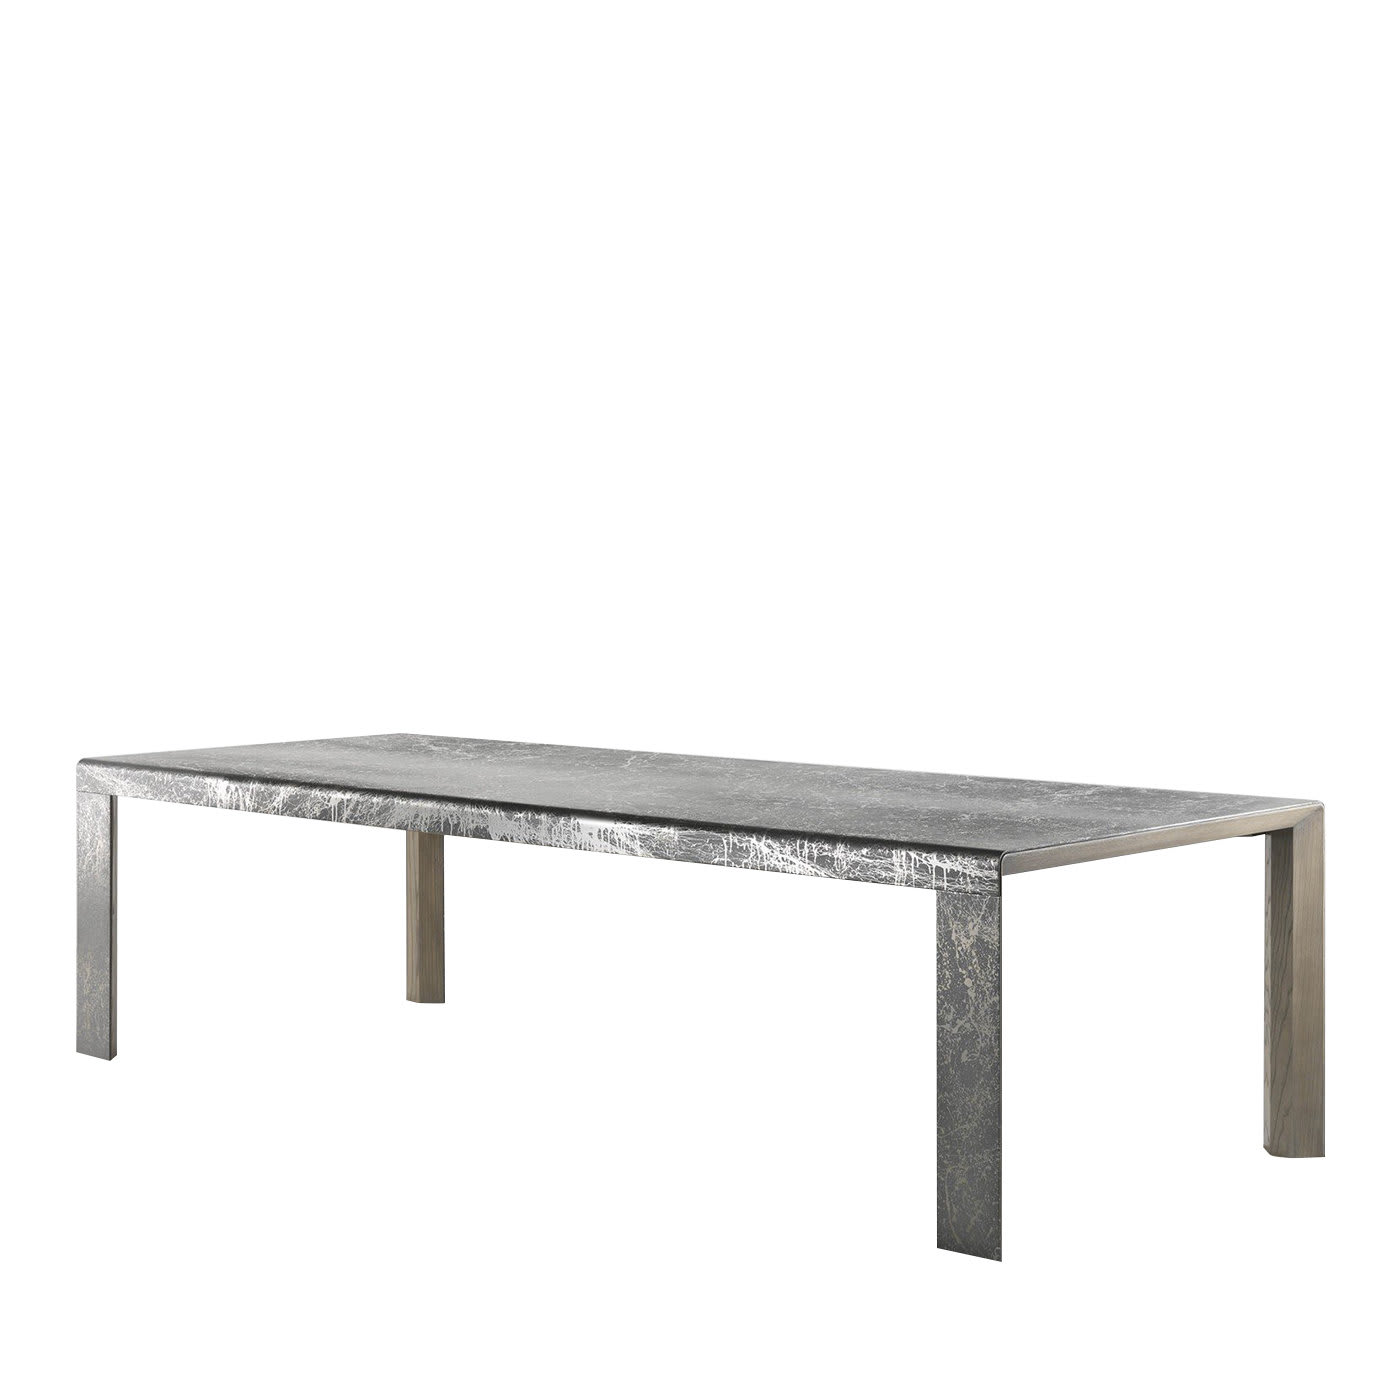 Bend Table - Mobilificio RBR Ebanisteria